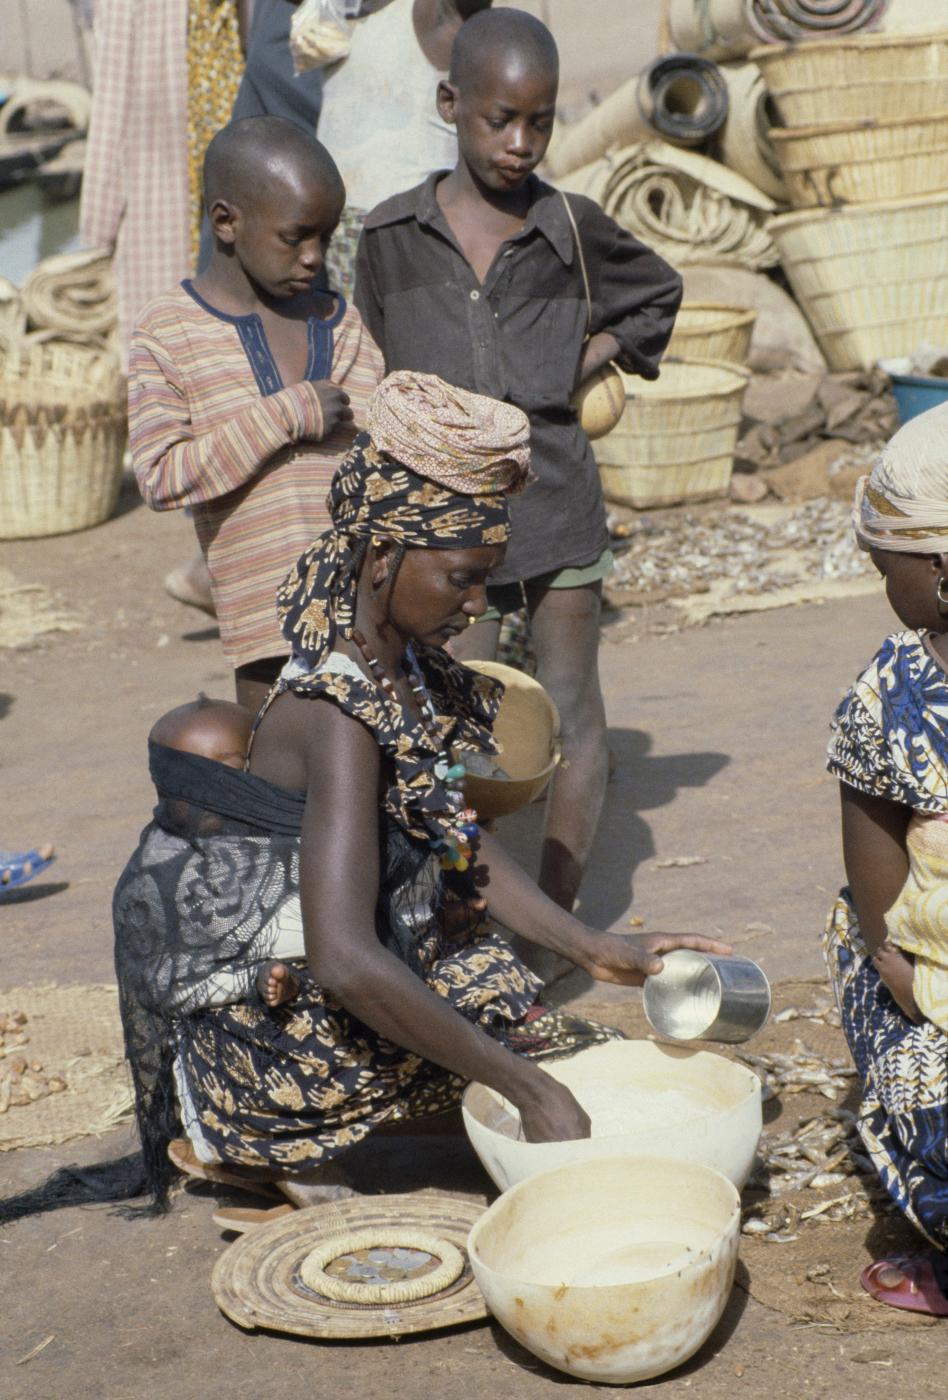 Getting milk at a market in Mopti, Mali.